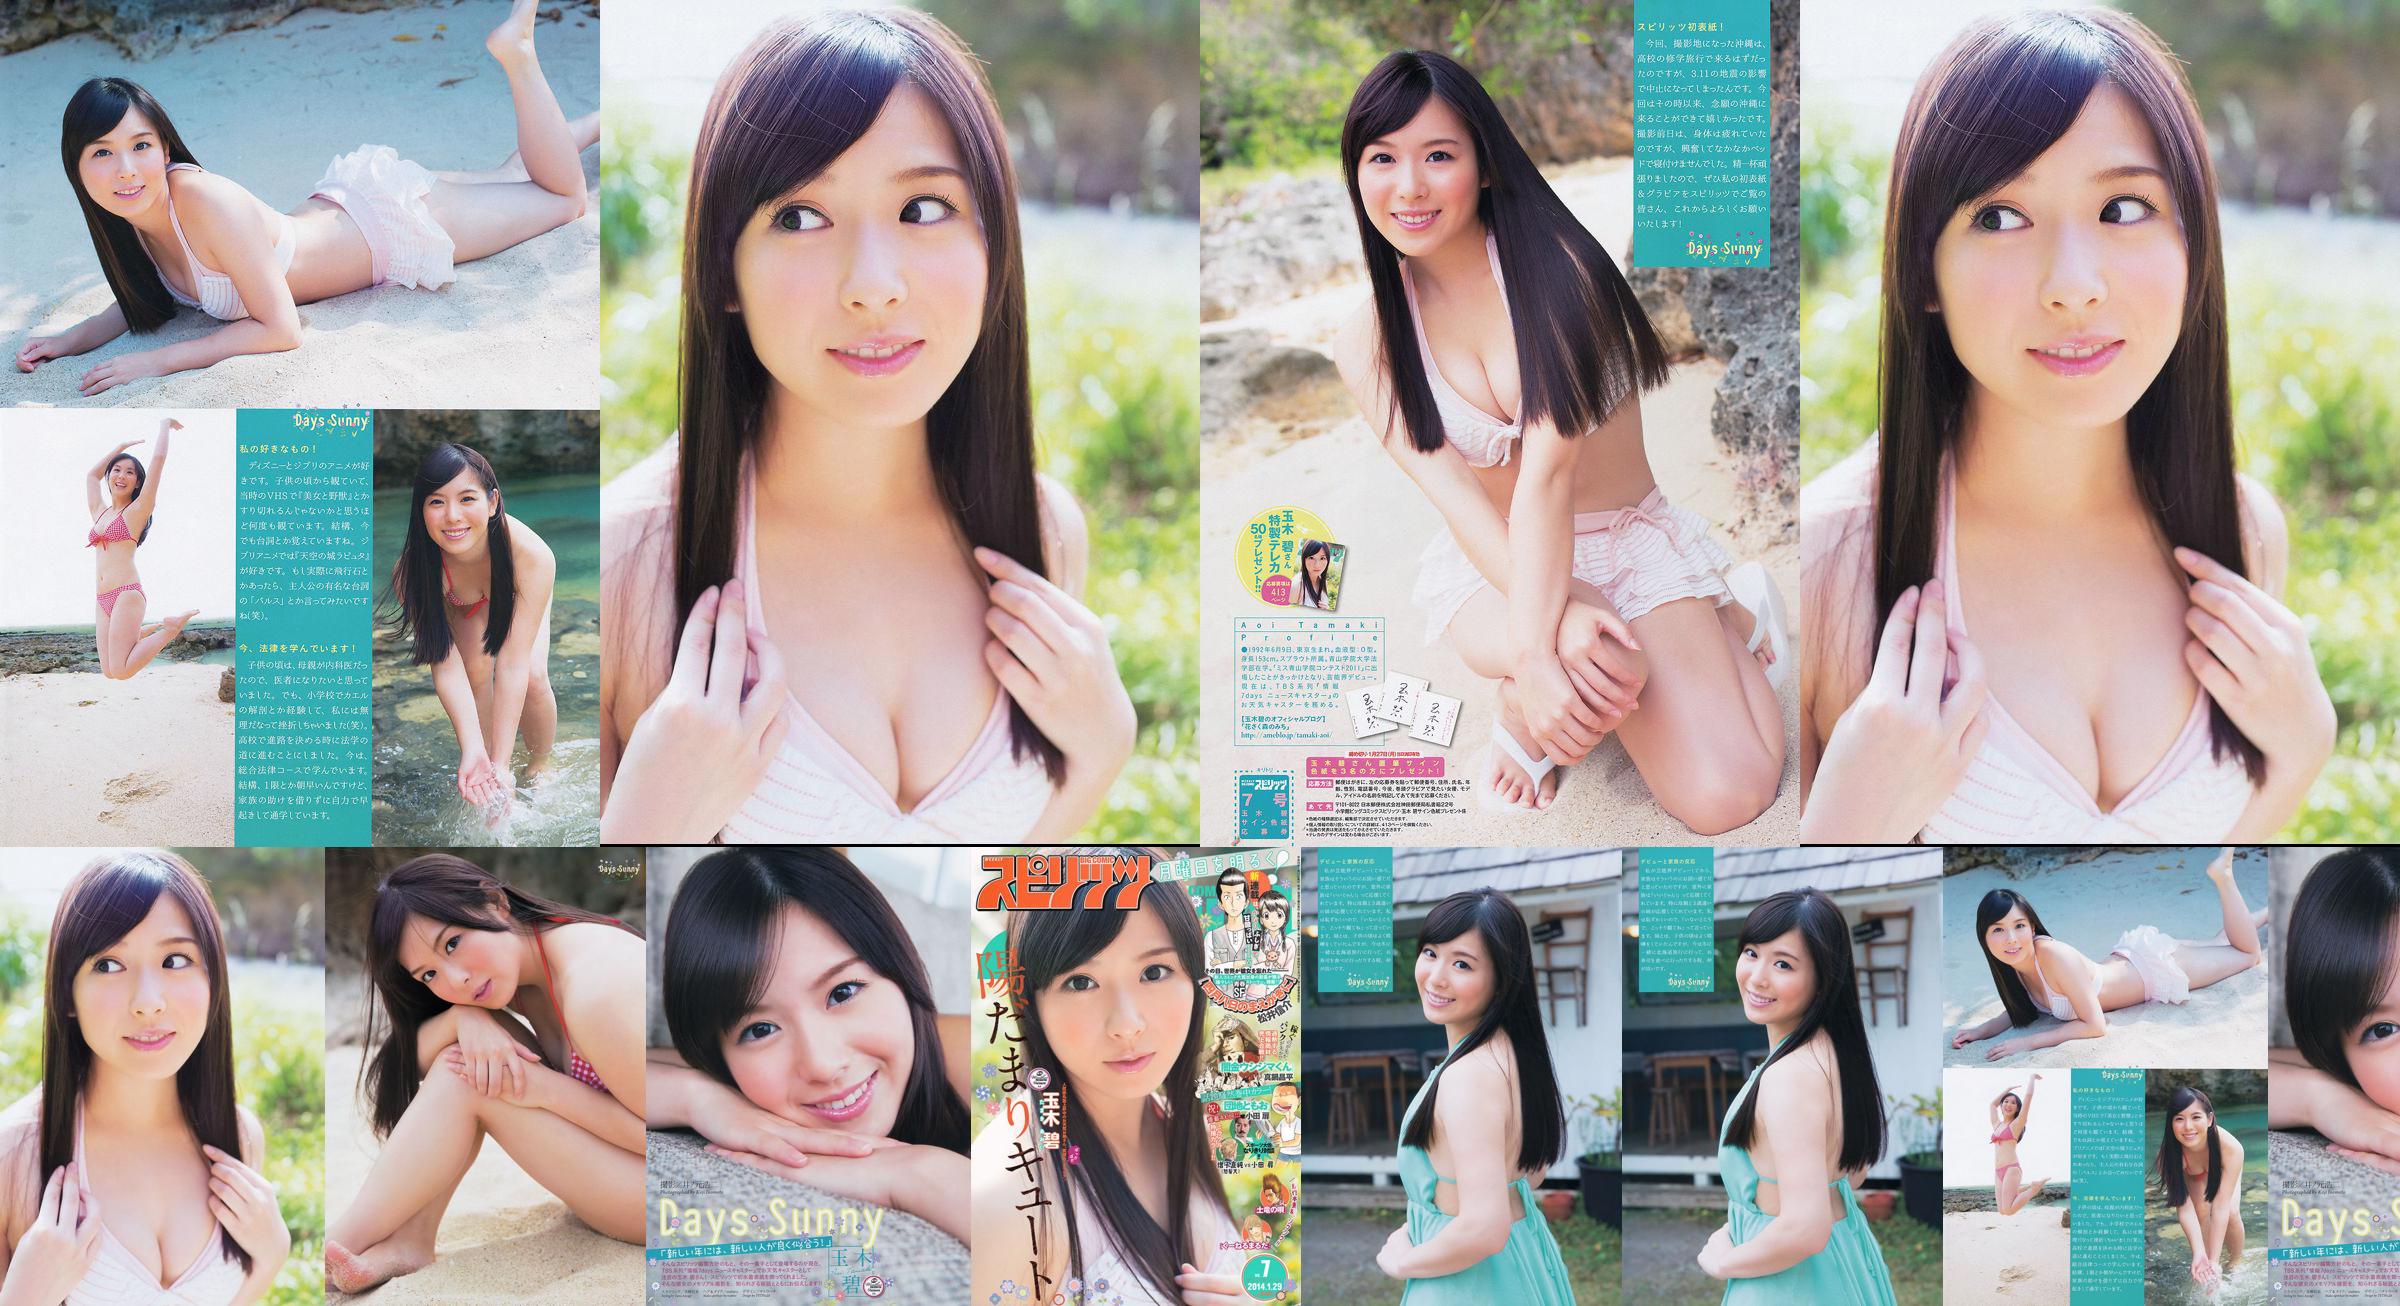 [Weekly Big Comic Spirits] Tamakibi 2014 No.07 Photo Magazine No.6db47e Page 1